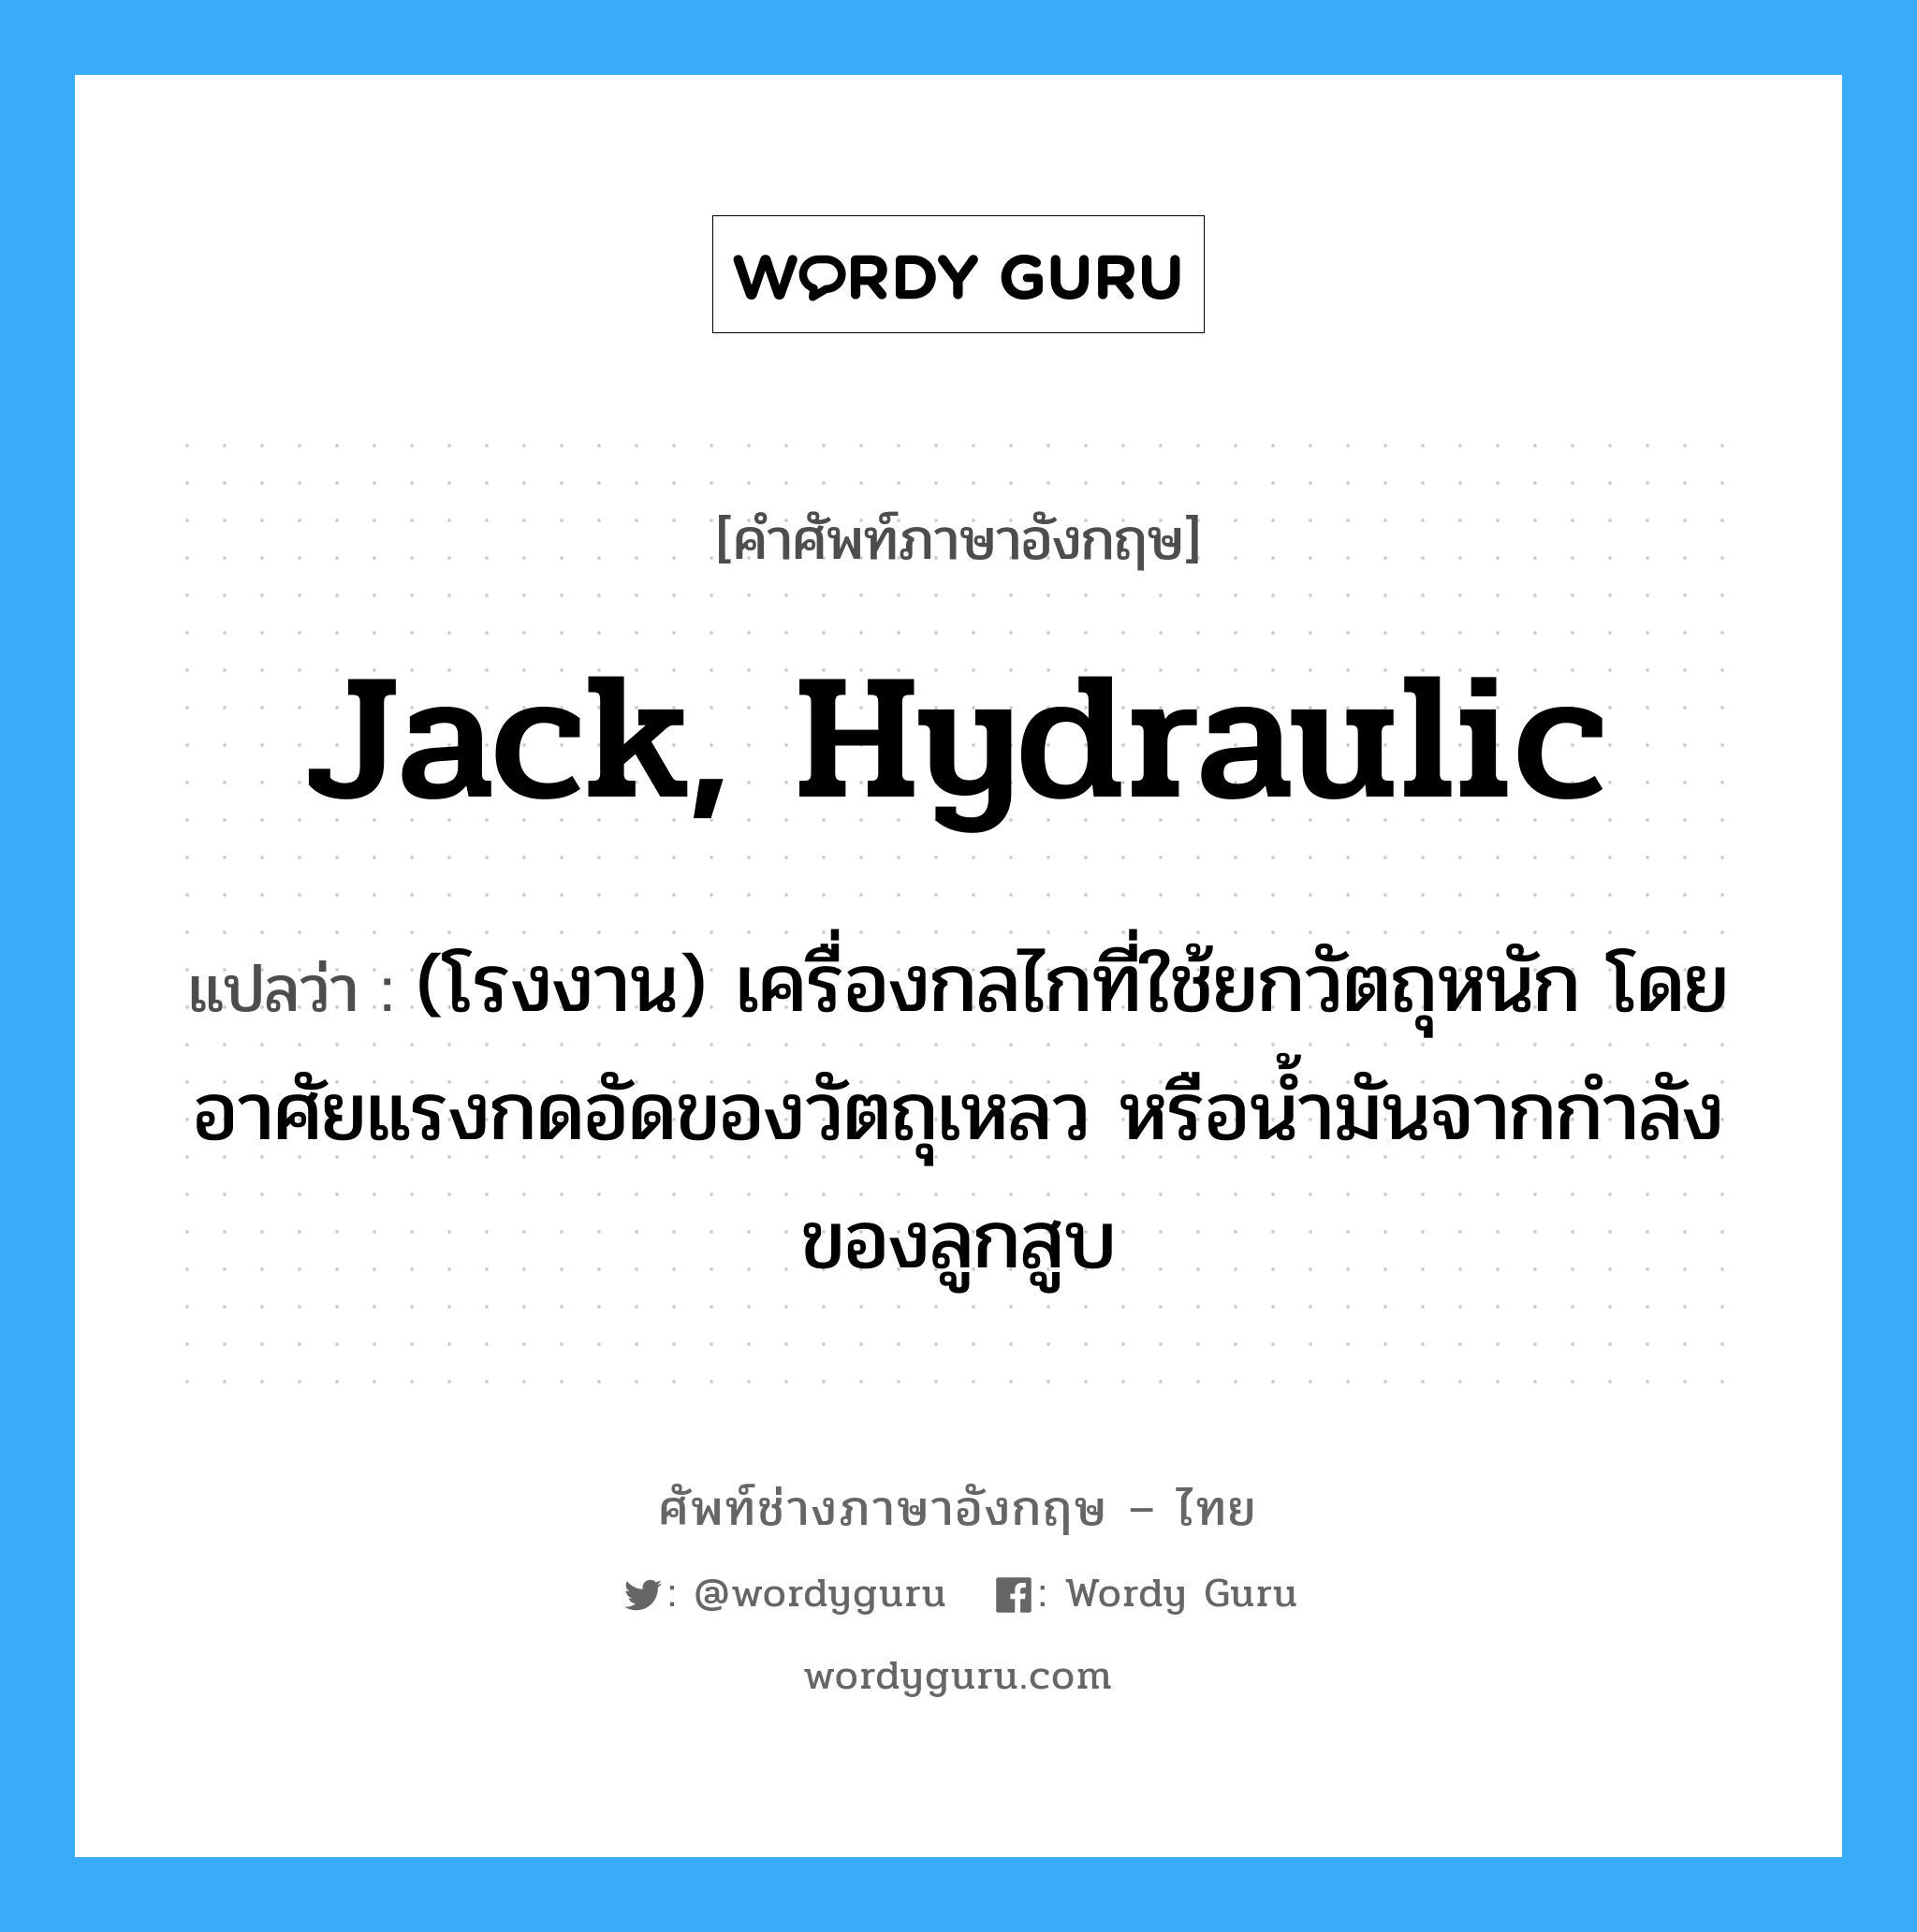 jack, hydraulic แปลว่า?, คำศัพท์ช่างภาษาอังกฤษ - ไทย jack, hydraulic คำศัพท์ภาษาอังกฤษ jack, hydraulic แปลว่า (โรงงาน) เครื่องกลไกที่ใช้ยกวัตถุหนัก โดยอาศัยแรงกดอัดของวัตถุเหลว หรือน้ำมันจากกำลังของลูกสูบ